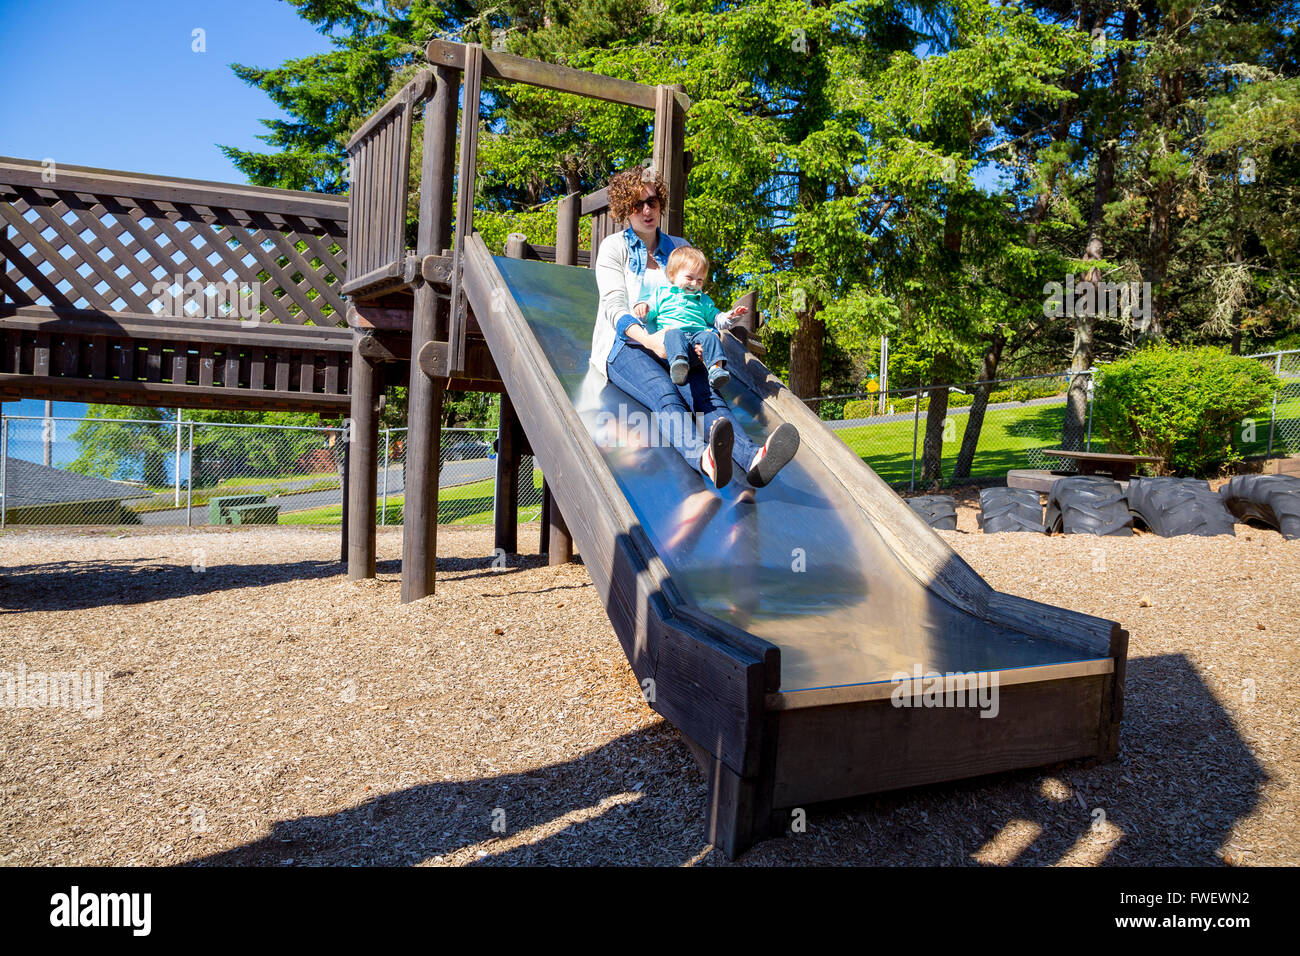 Una madre e suo figlio far scorrere in basso la slitta in metallo in corrispondenza di un parco giochi all'aperto a un parco. Foto Stock